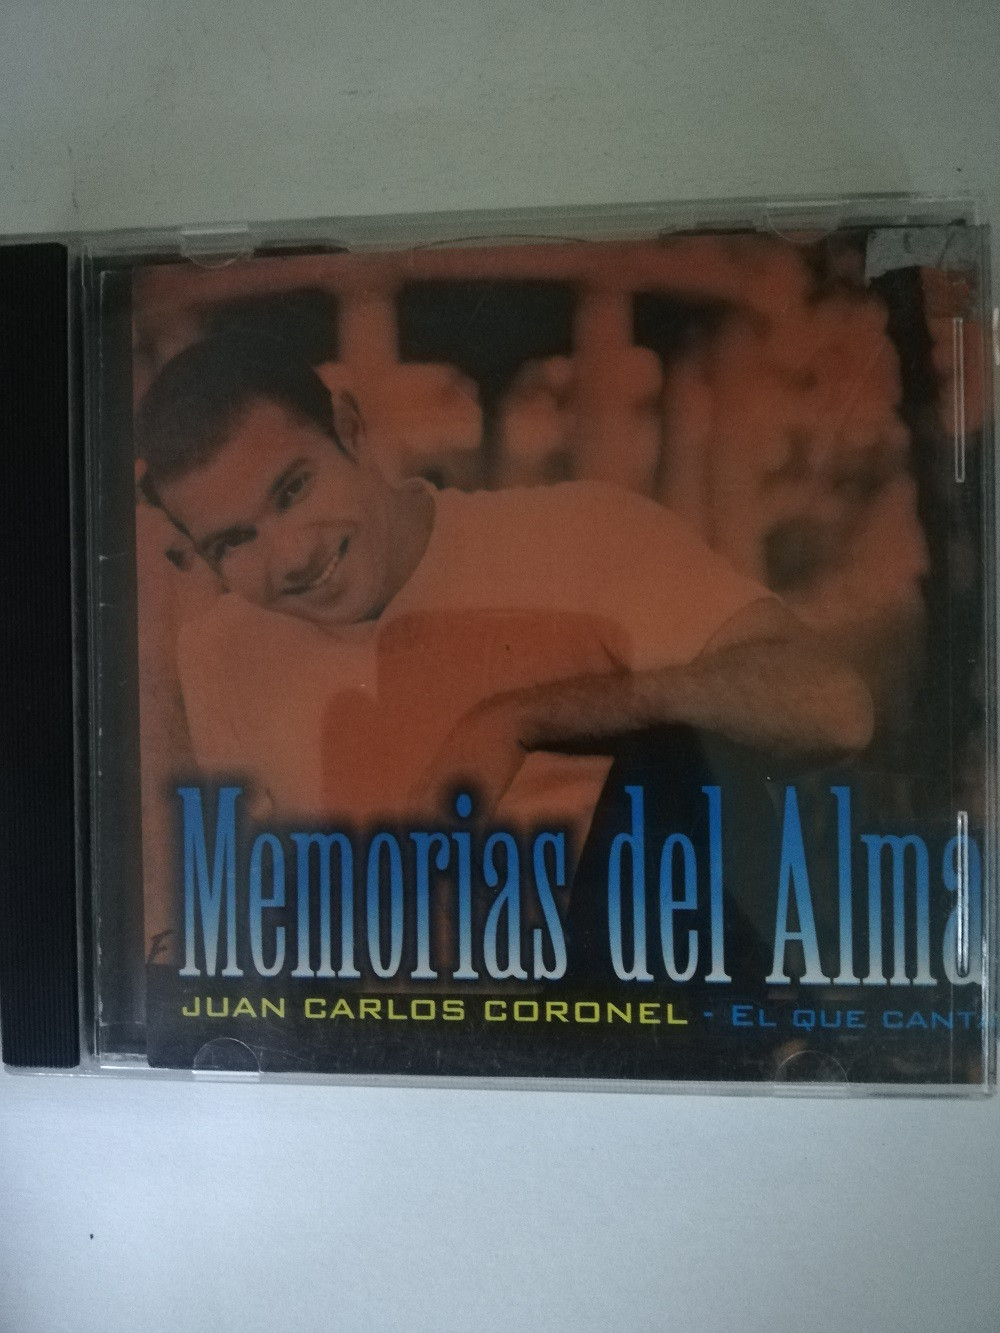 Imagen CD JUAN CARLOS CORONEL - MEMORIAS DEL ALMA 1